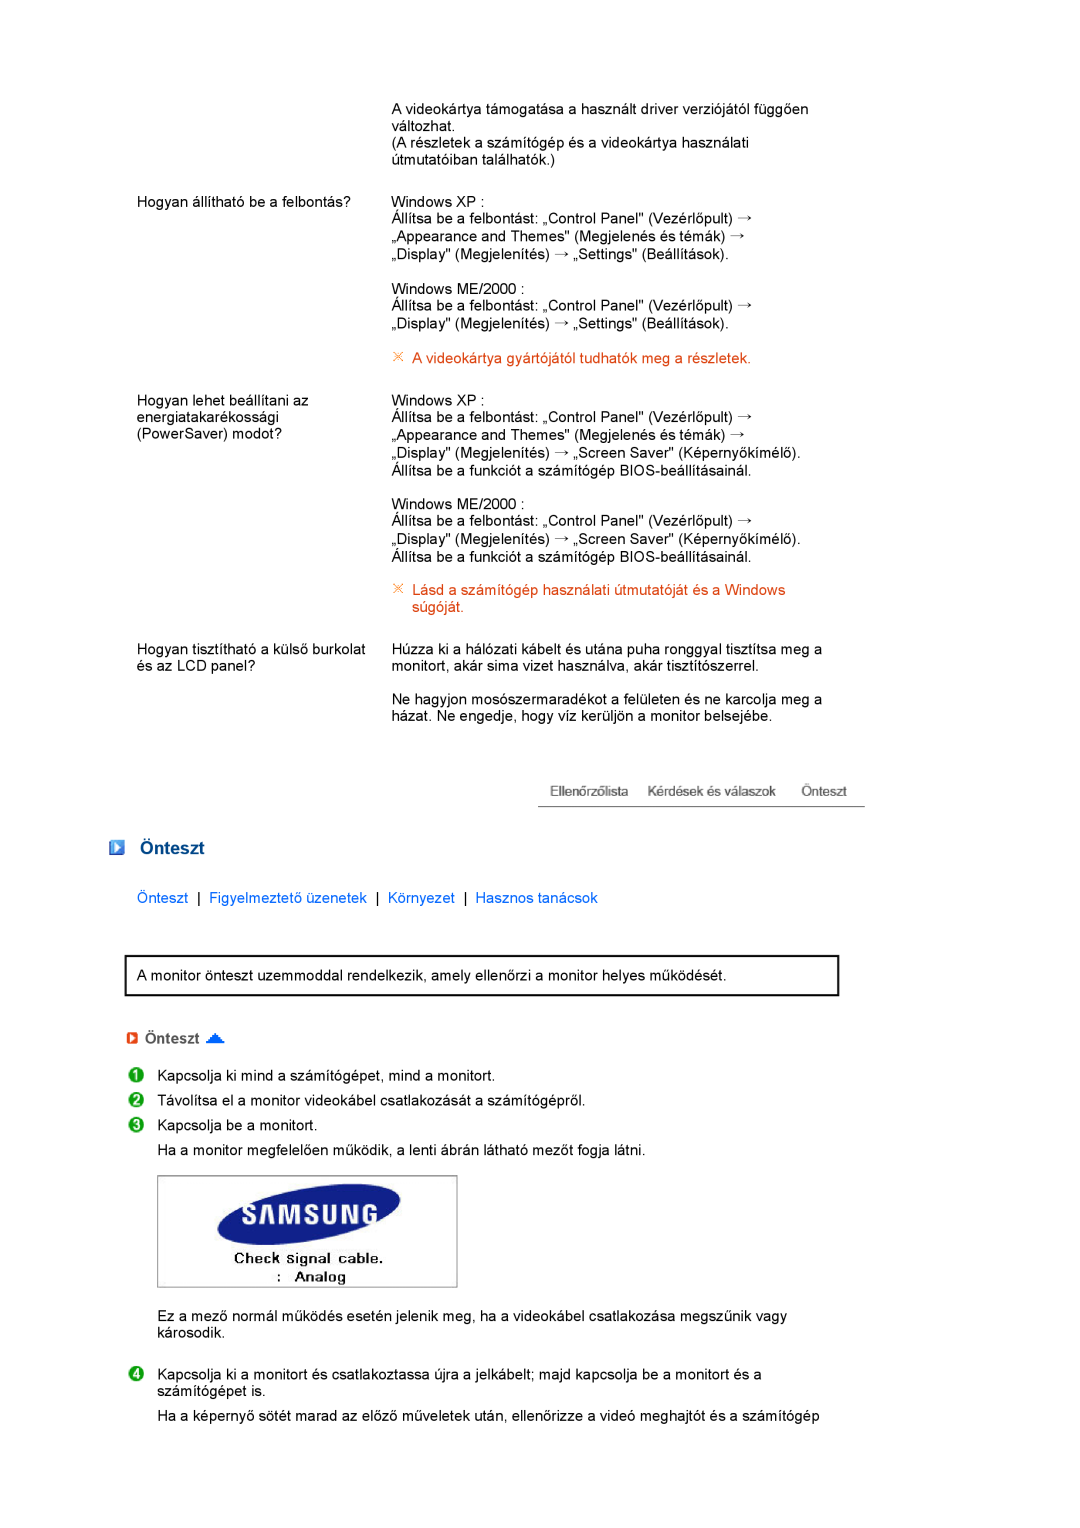 Samsung LS27HUBCB/EDC, LS27HUBCBS/EDC manual Önteszt, A videokártya gyártójától tudhatók meg a részletek, súgóját 